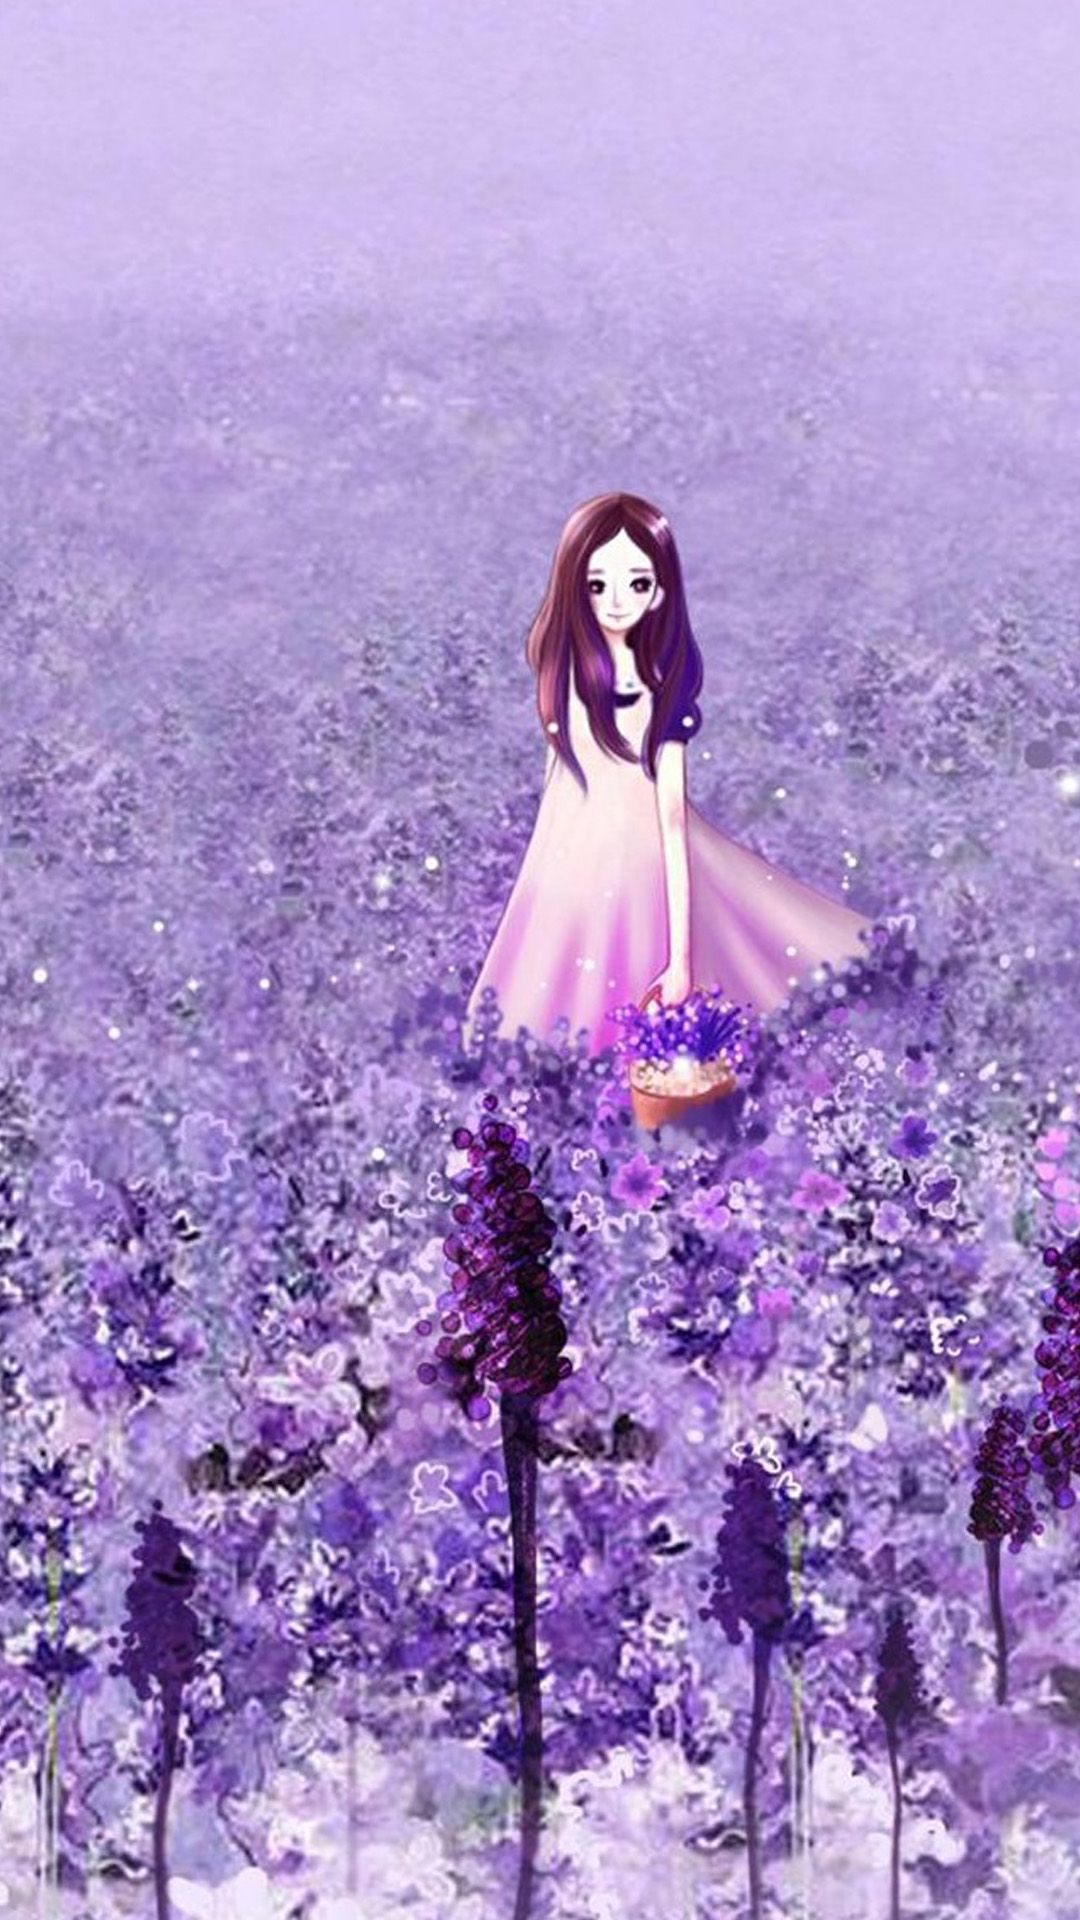 Anime Cute Girl In Purple Flower Garden IPhone 6 Wallpaper Download. IPhone Wallpaper, IPad Wallpaper One Stop Download. Hình ảnh, Anime, IPhone 6